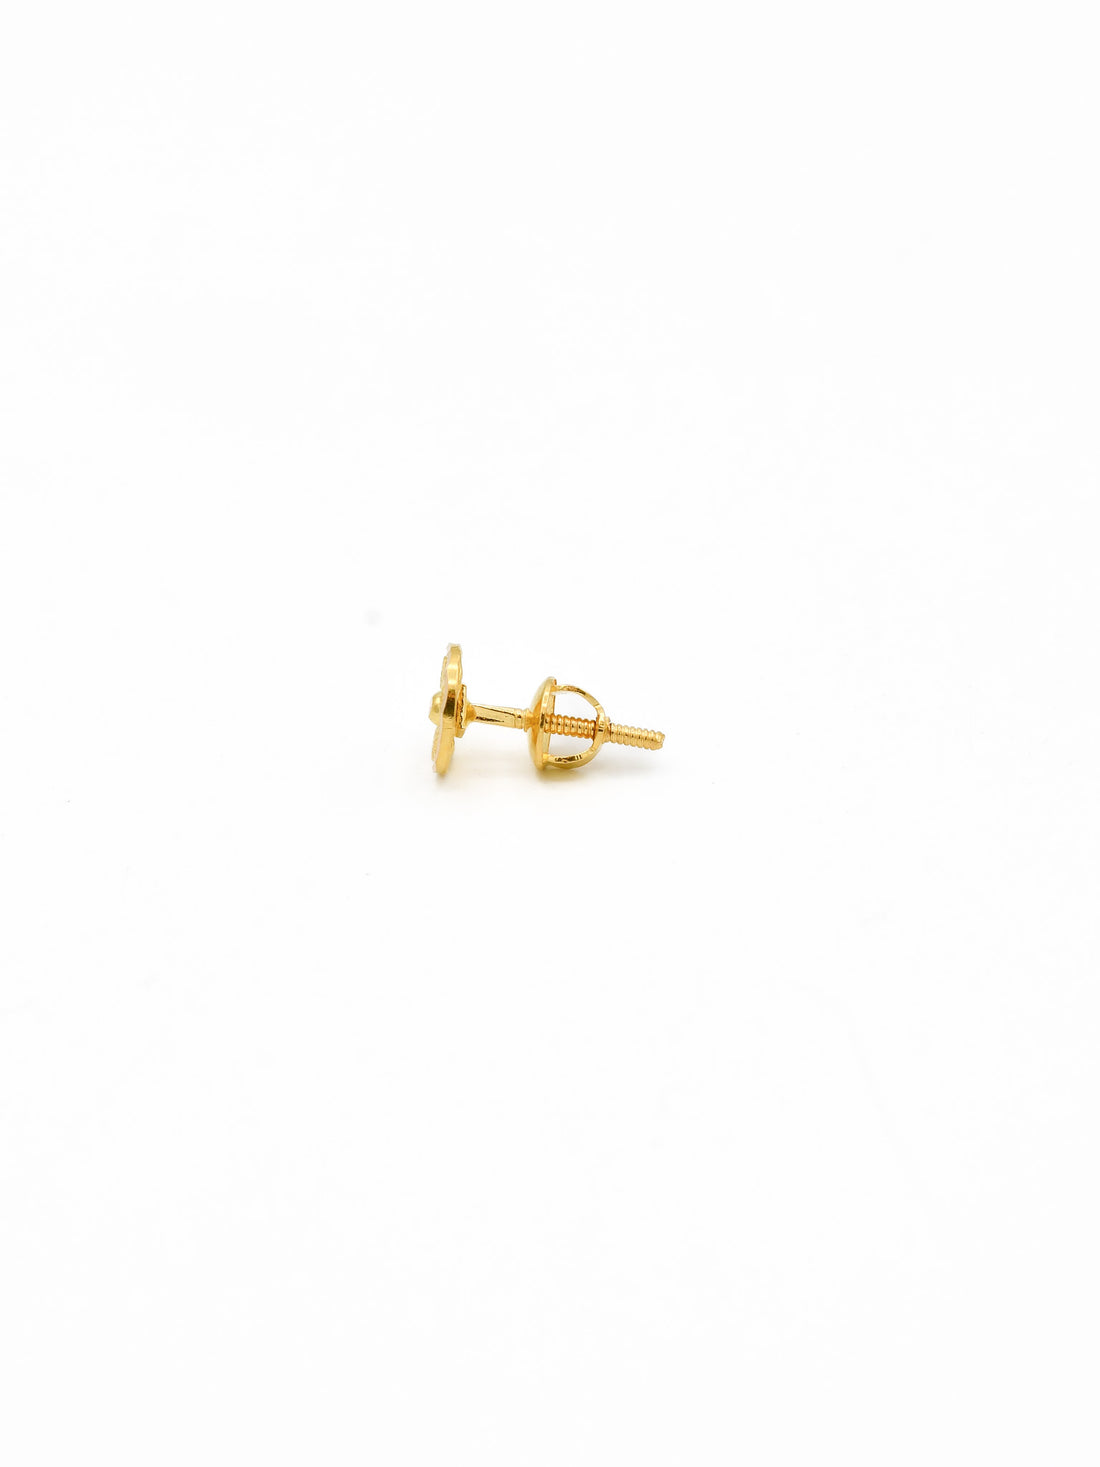 22ct Gold Stud Earrings 1 - Roop Darshan